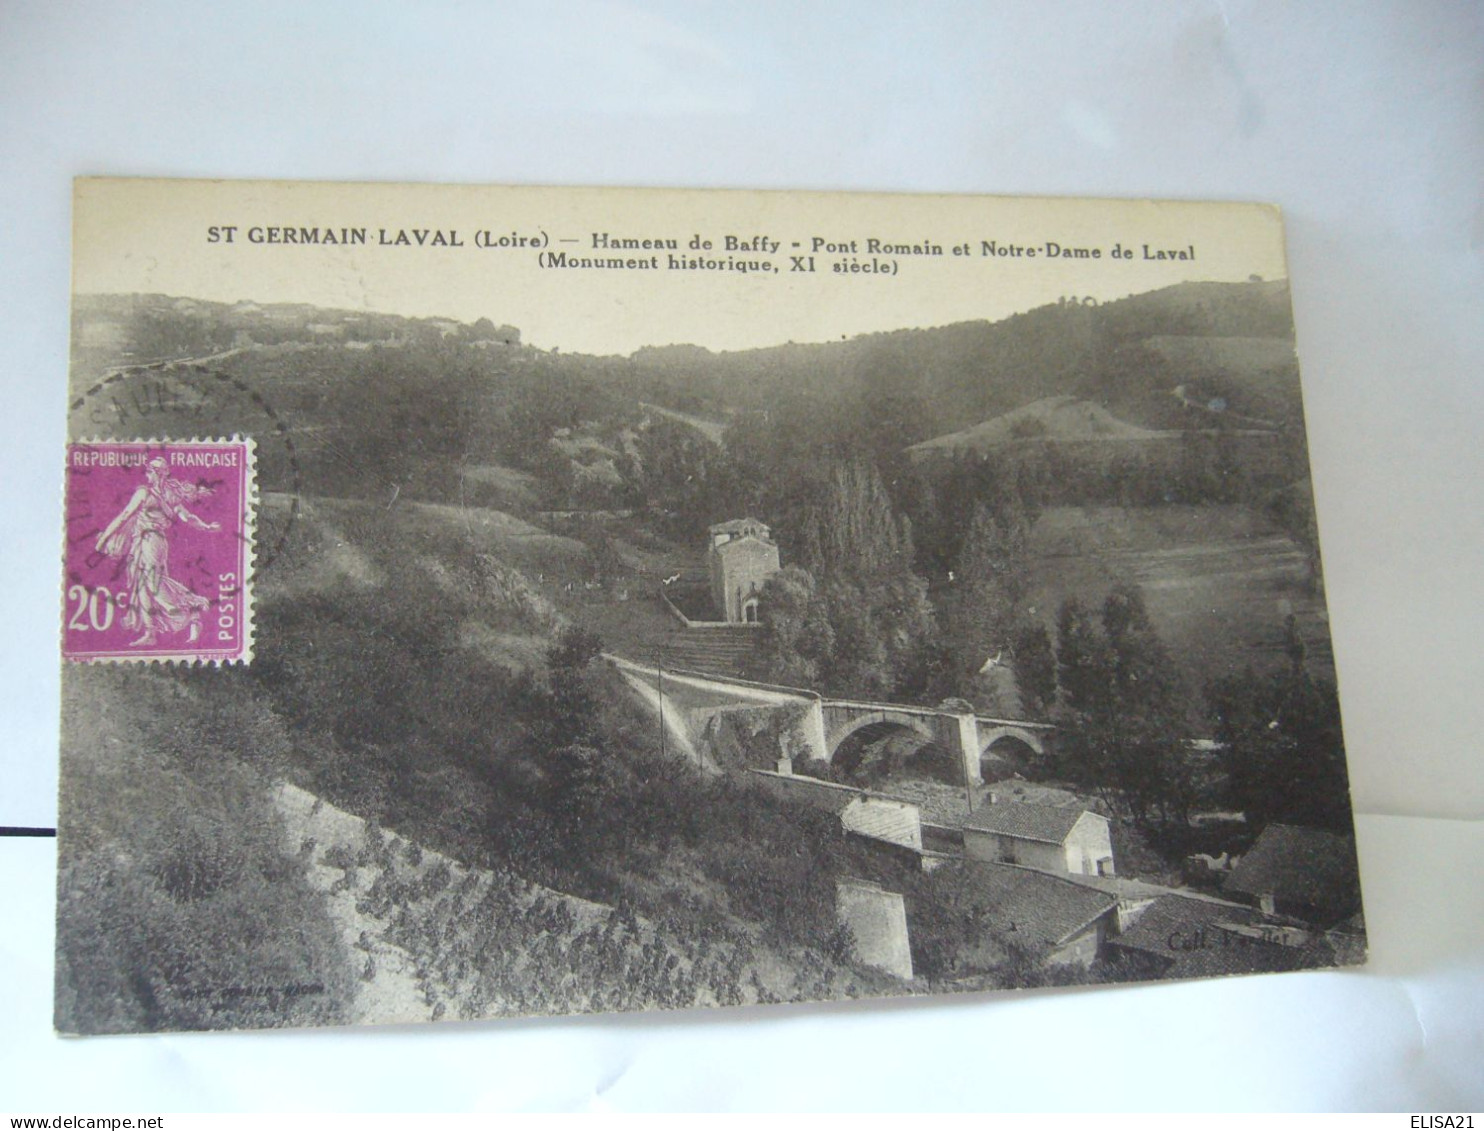 SAINT GERMAIN LAVAL  42 LOIRE HAMEAU DE BAFFY PONT ROMAIN ET NOTRE DAME DE LAVAL CPA 1933 - Saint Germain Laval